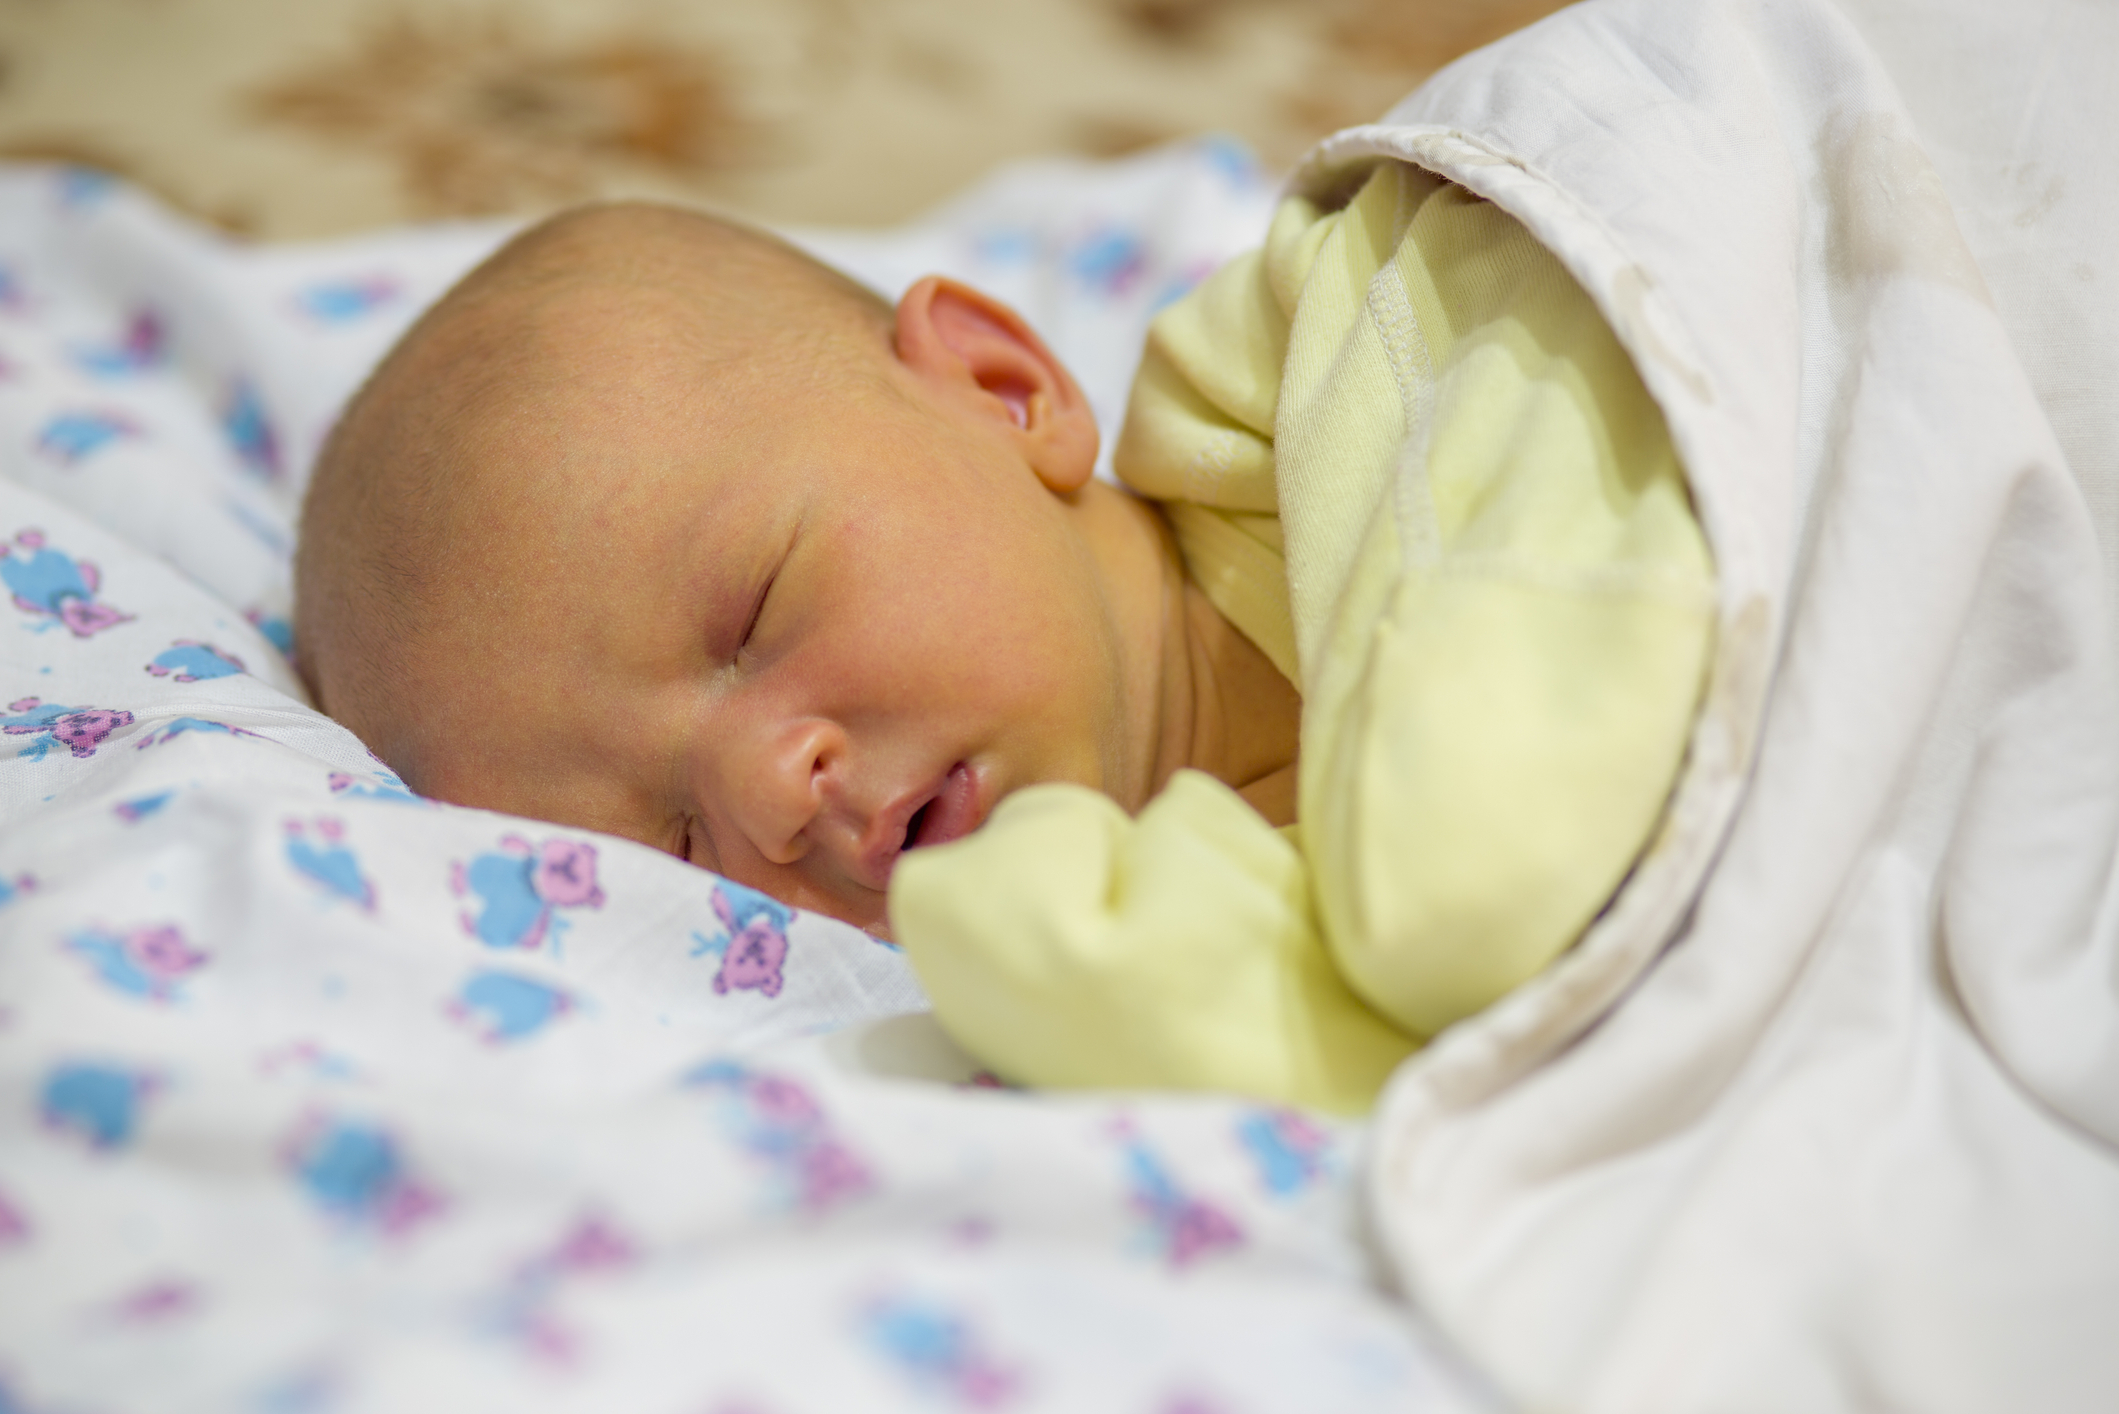 Icterícia no recém-nascido: o que é? Causas e tratamento | Vida Saudável | Conteúdos produzidos pelo Hospital Israelita Albert Einstein